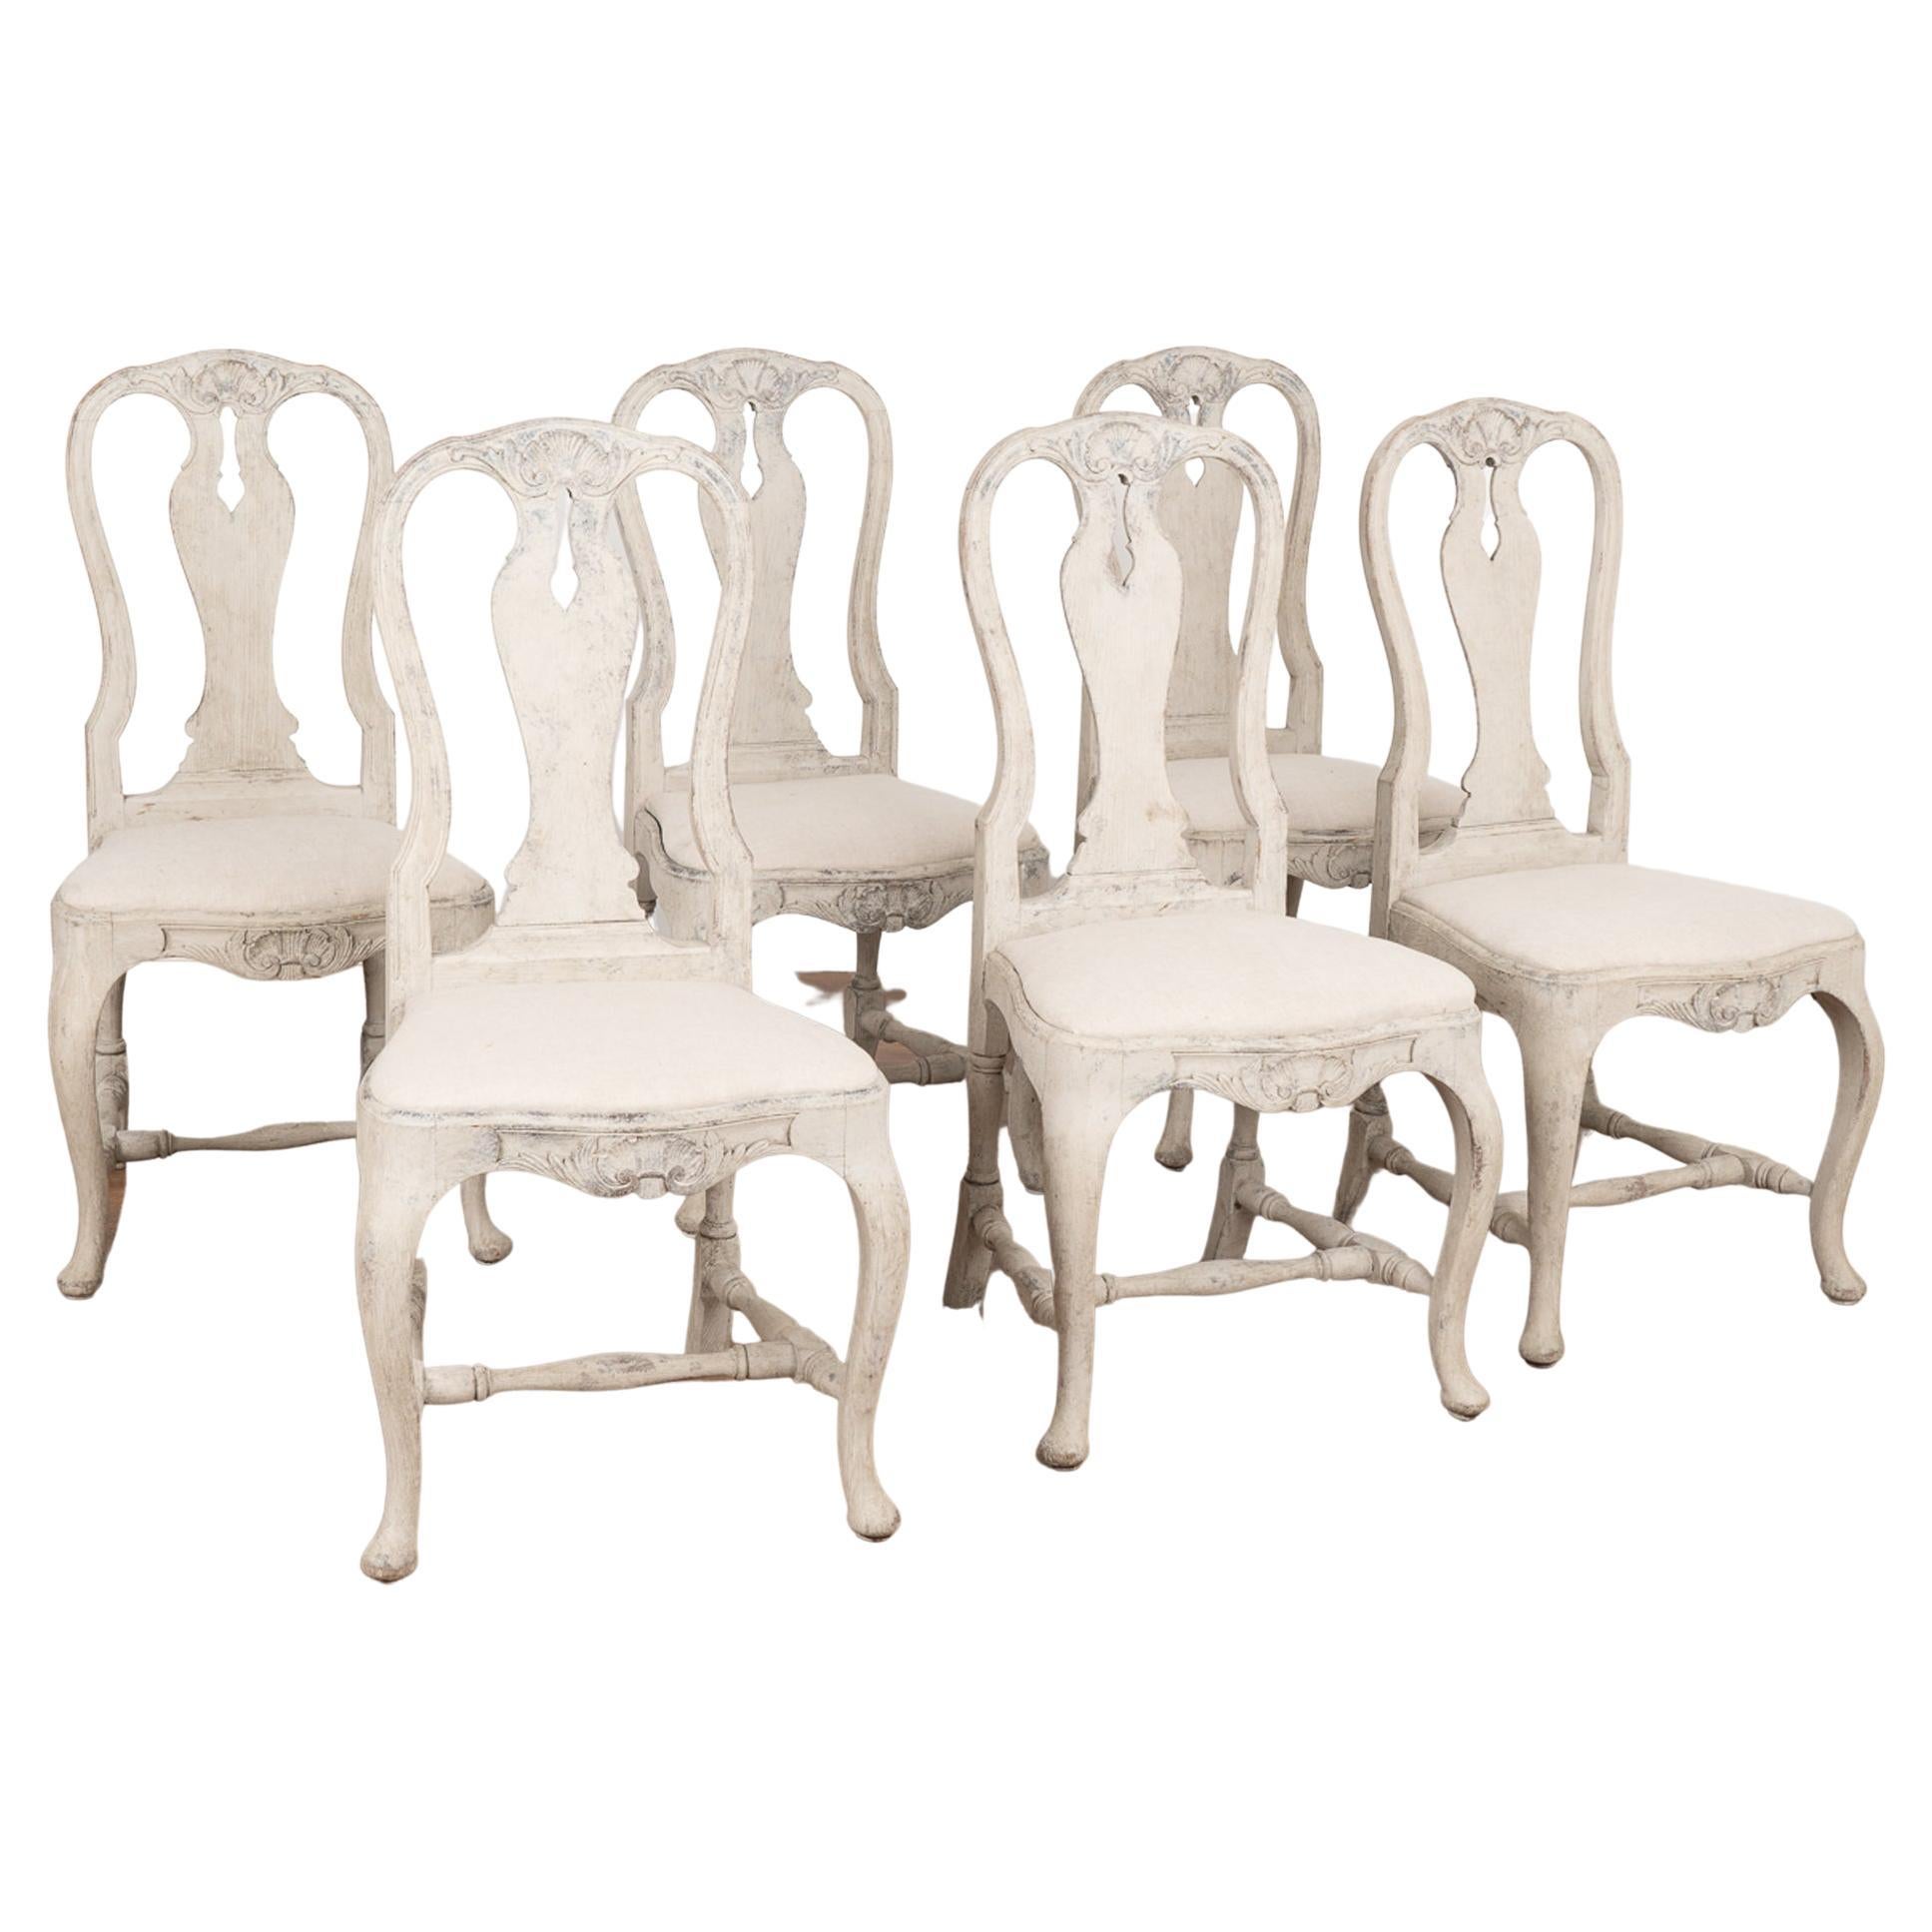 Ensemble de six chaises de salle à manger grises rococo, Suède vers 1840-60